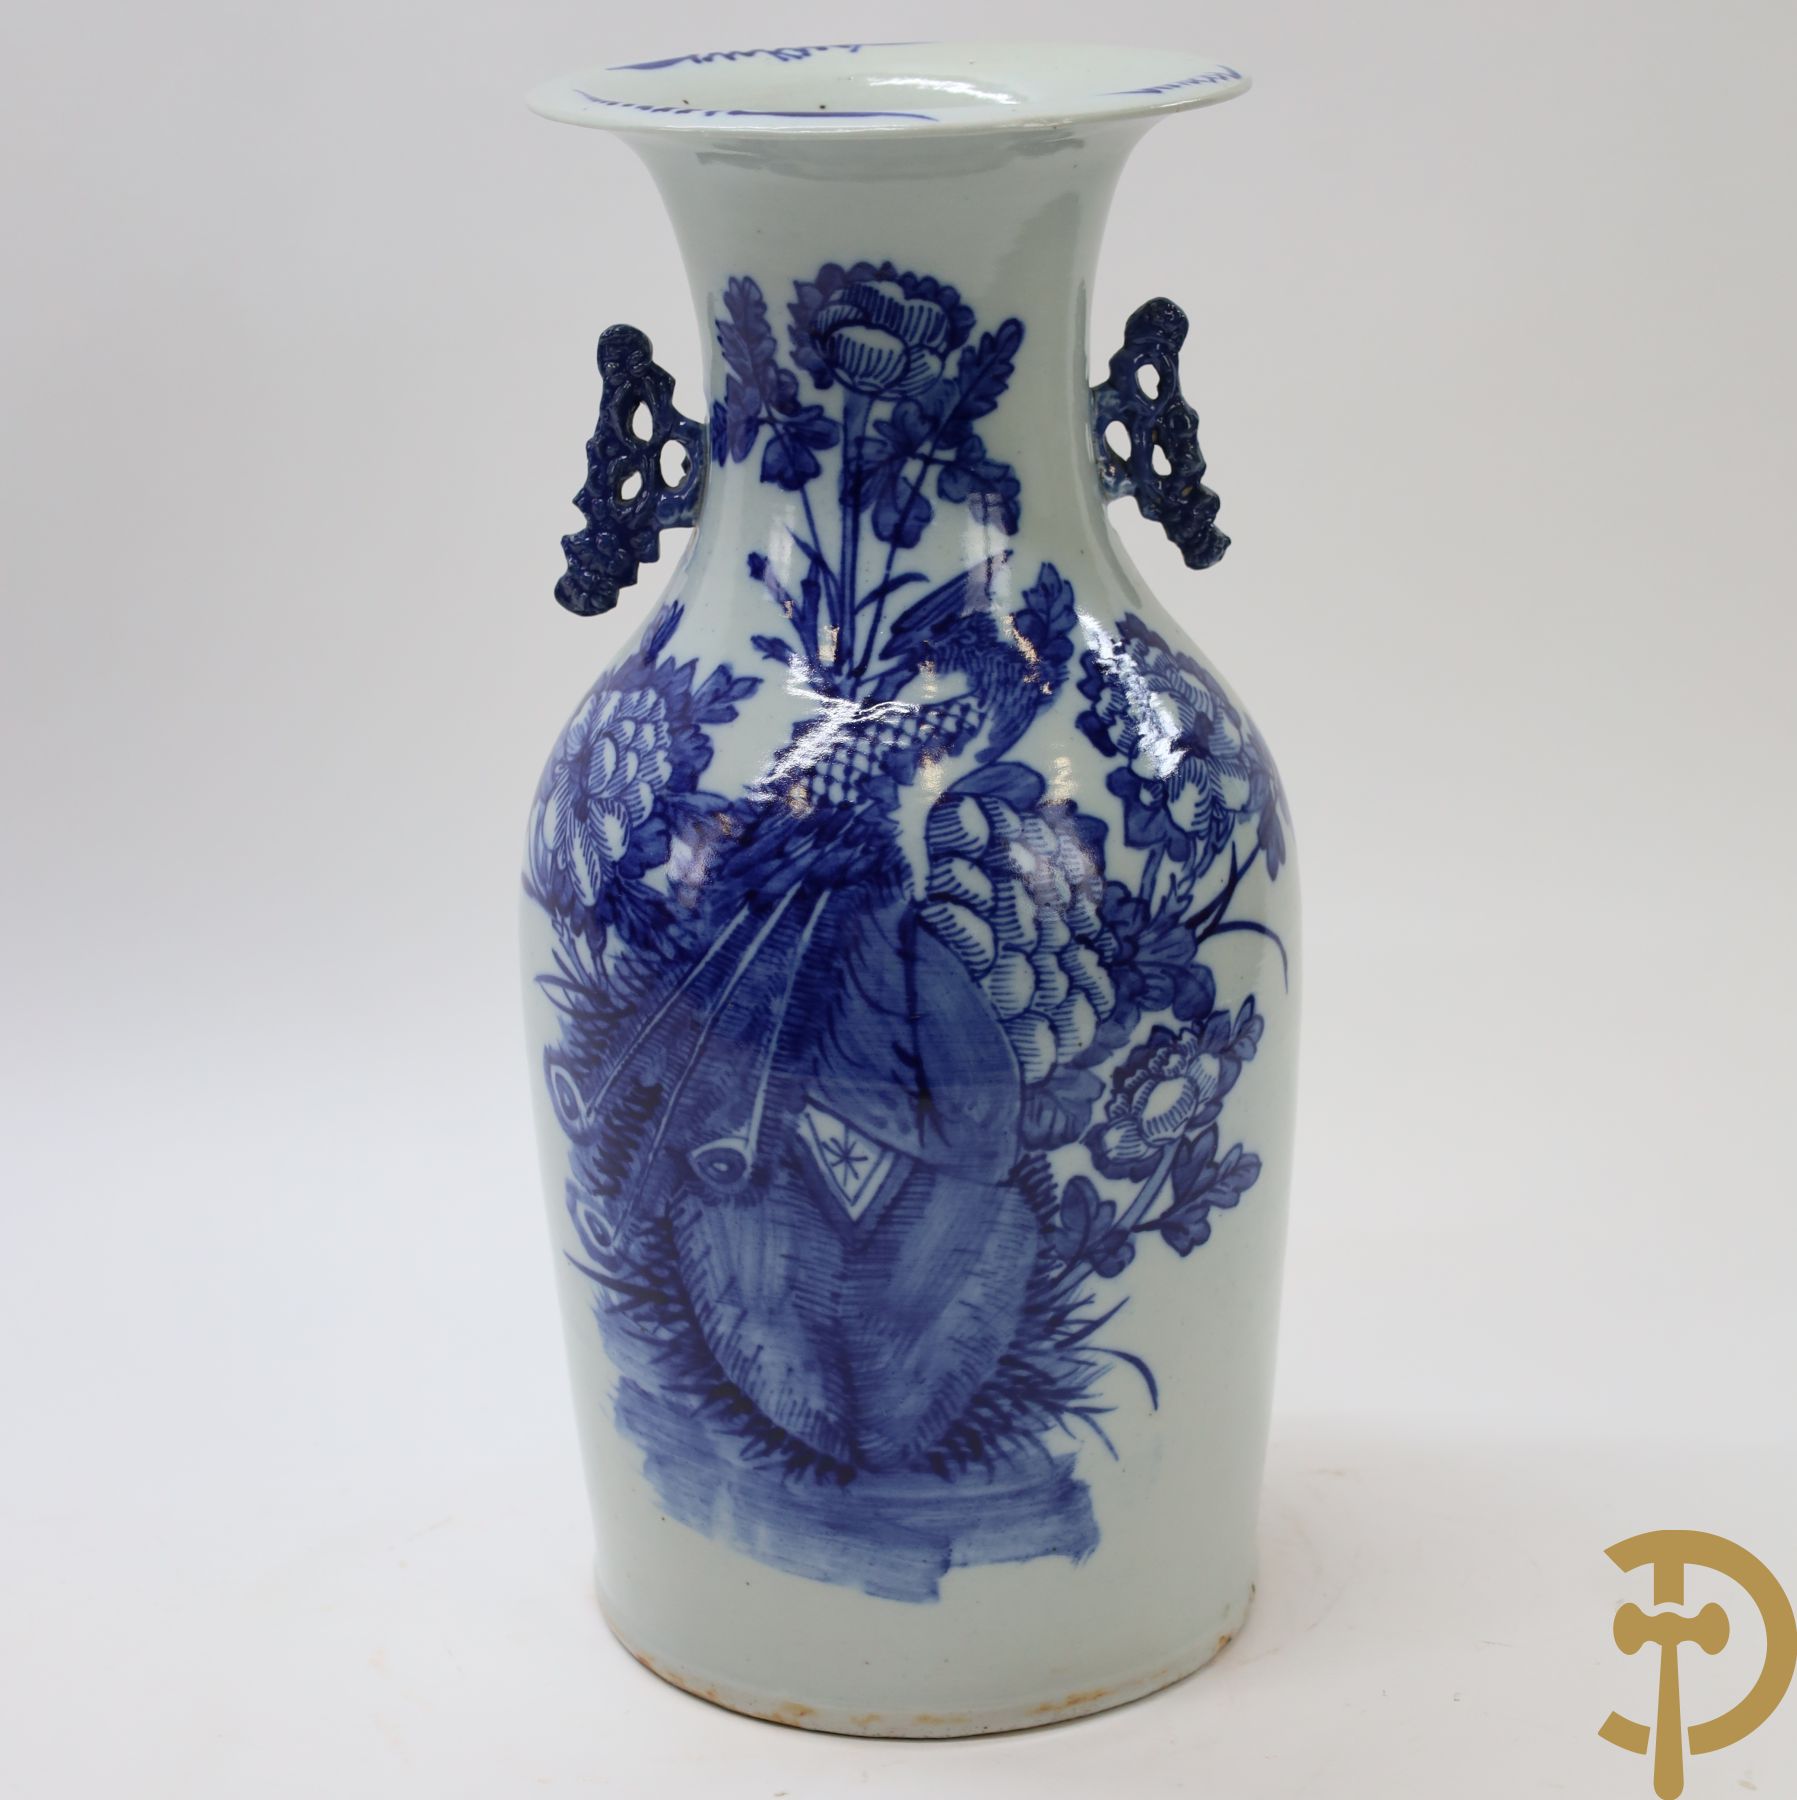 Chinese porseleinen vaas met blauw/wit decor van vogels en bloemen